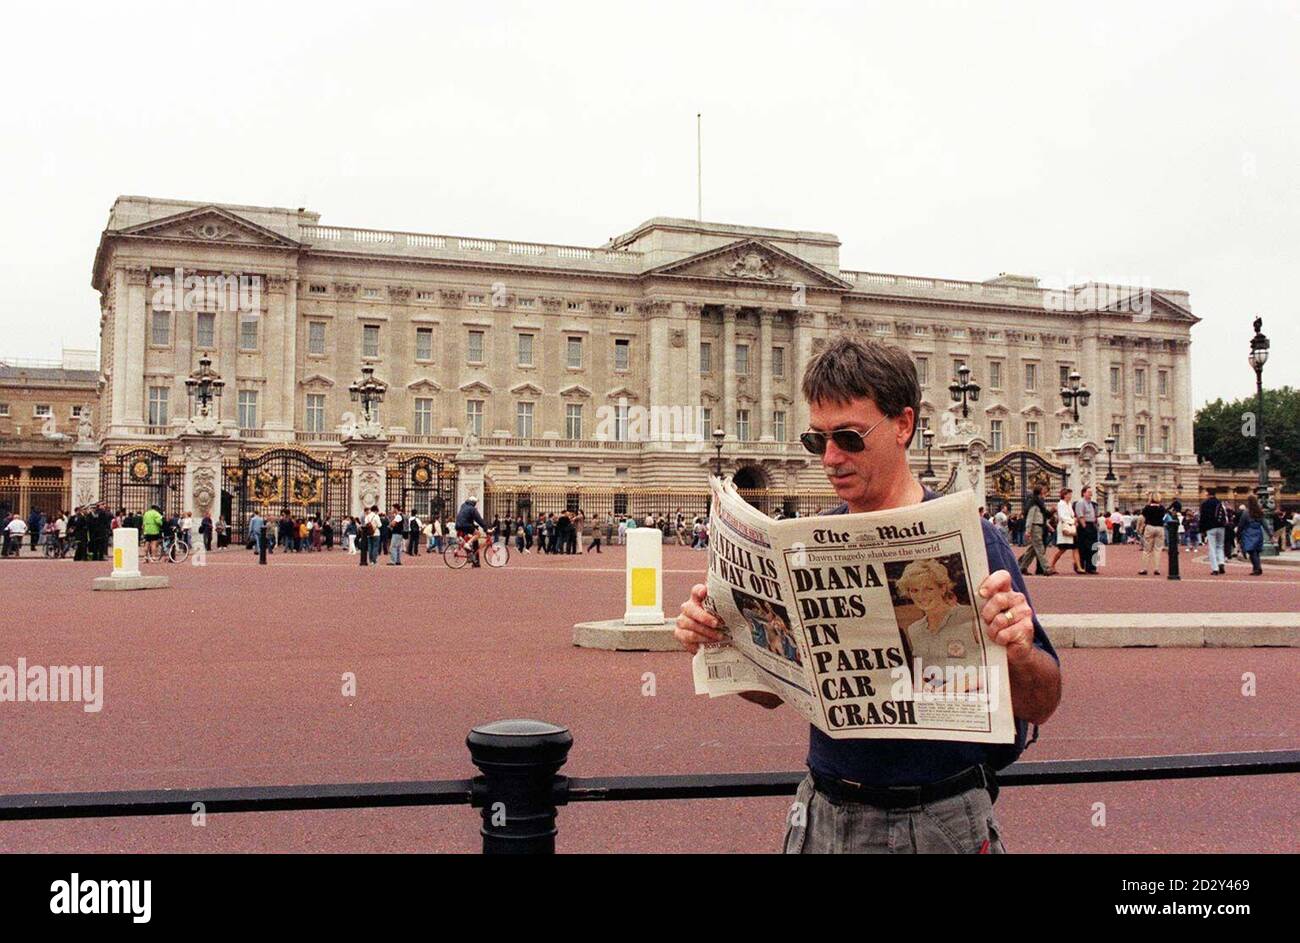 Un membre du public lisant les nouvelles choquantes de la mort de Diana, tél. : sam pearce 31-8-97 Banque D'Images